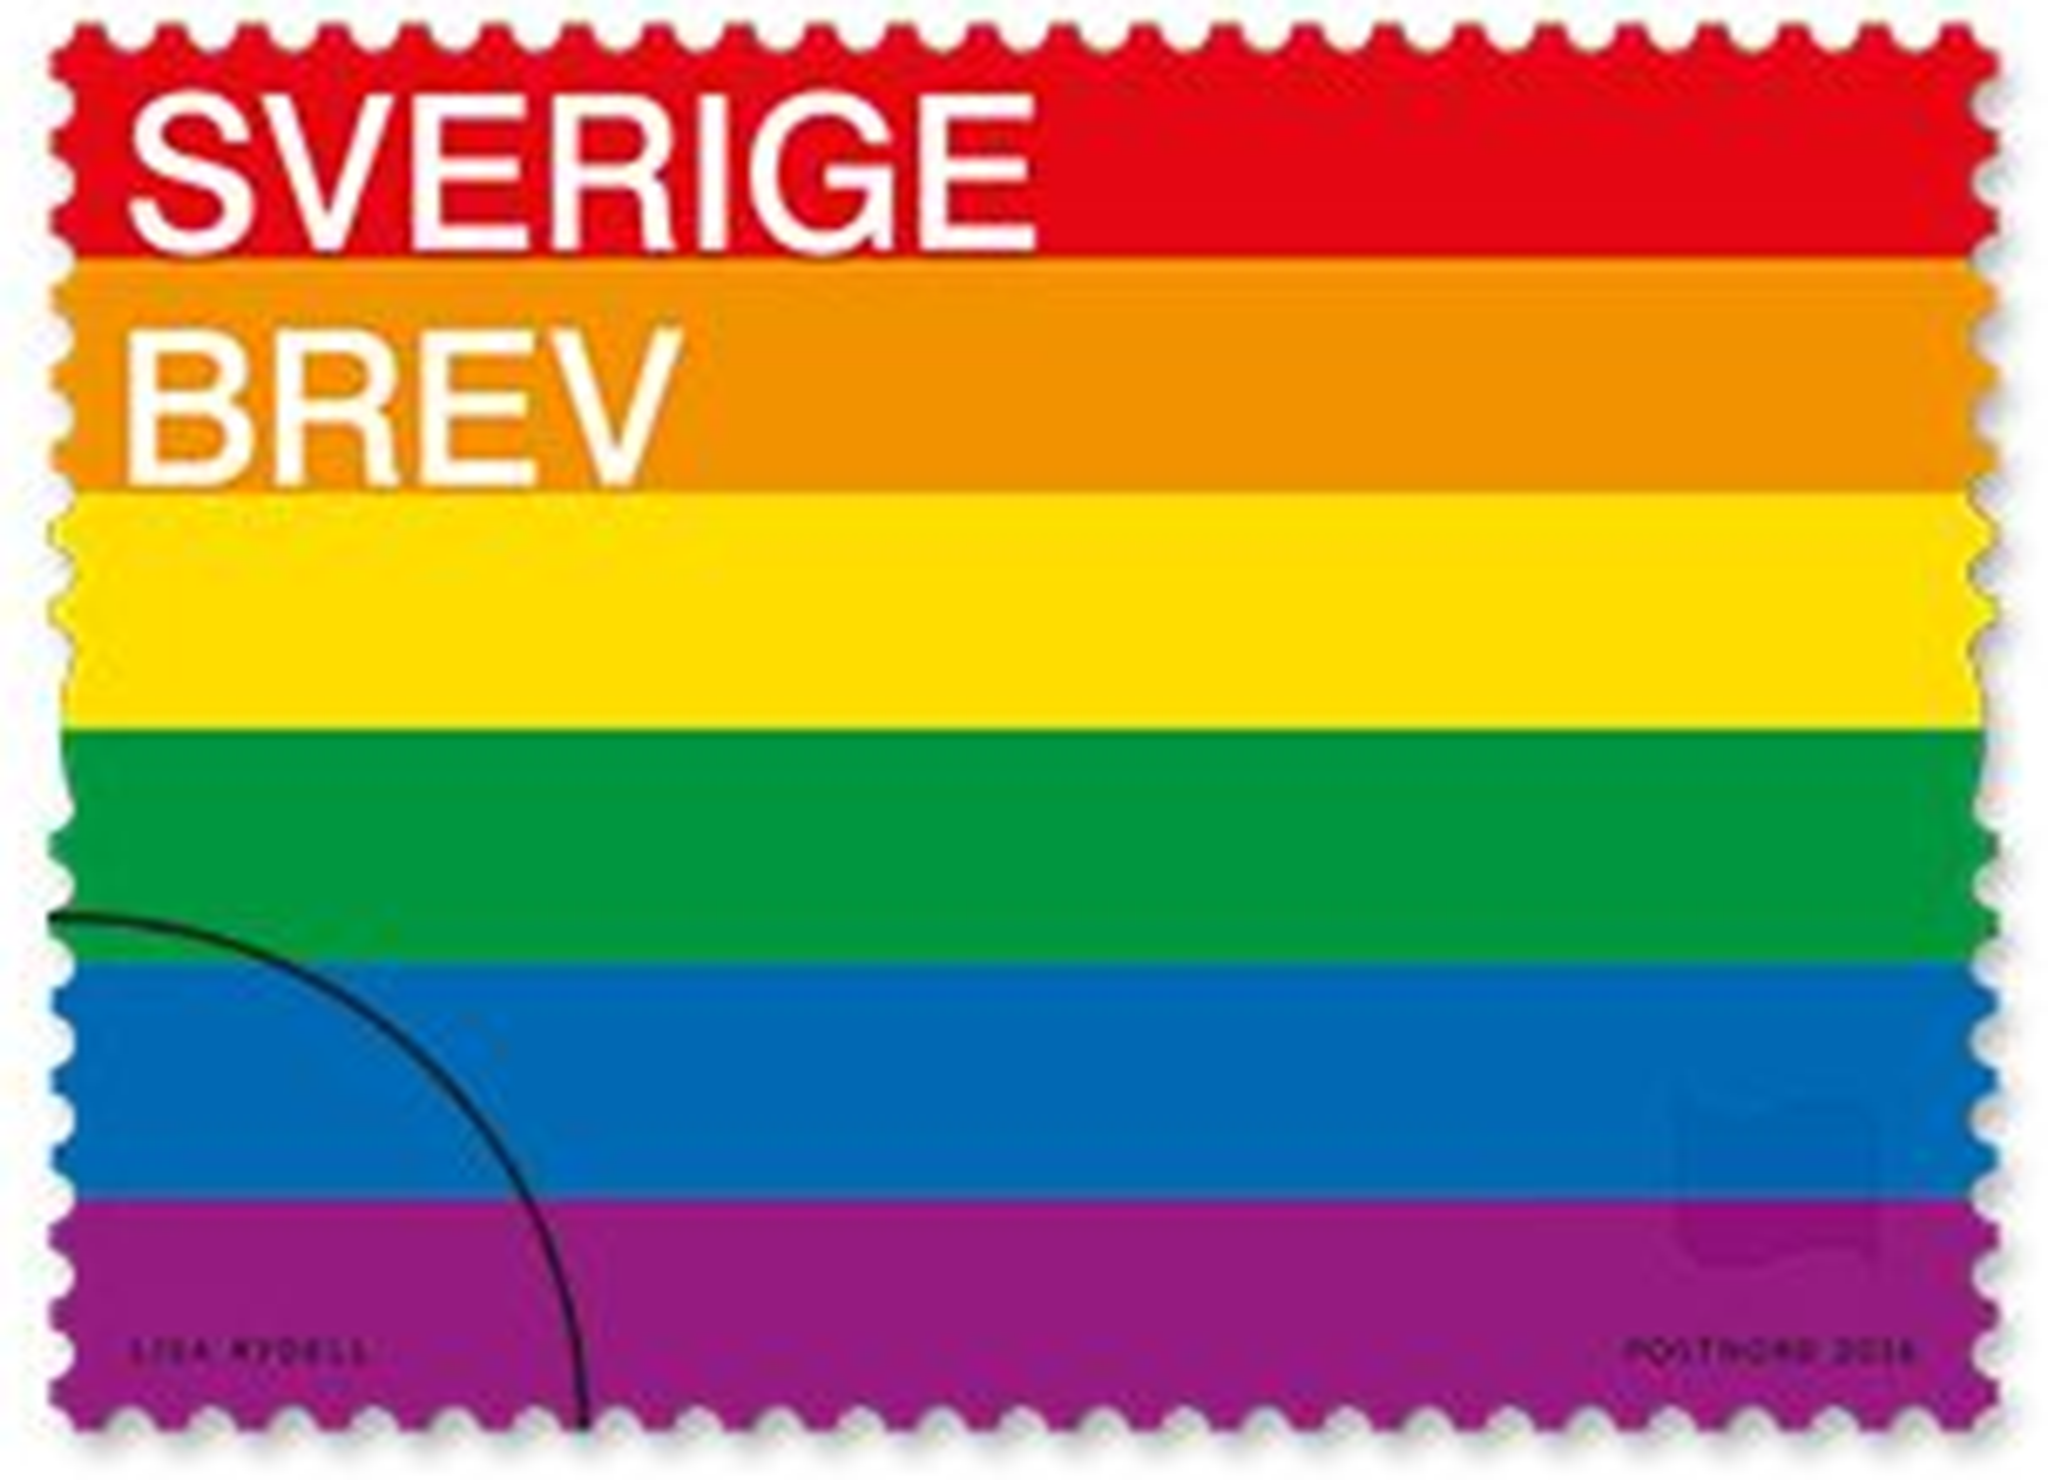 PostNord's commemorative gay pride stamp